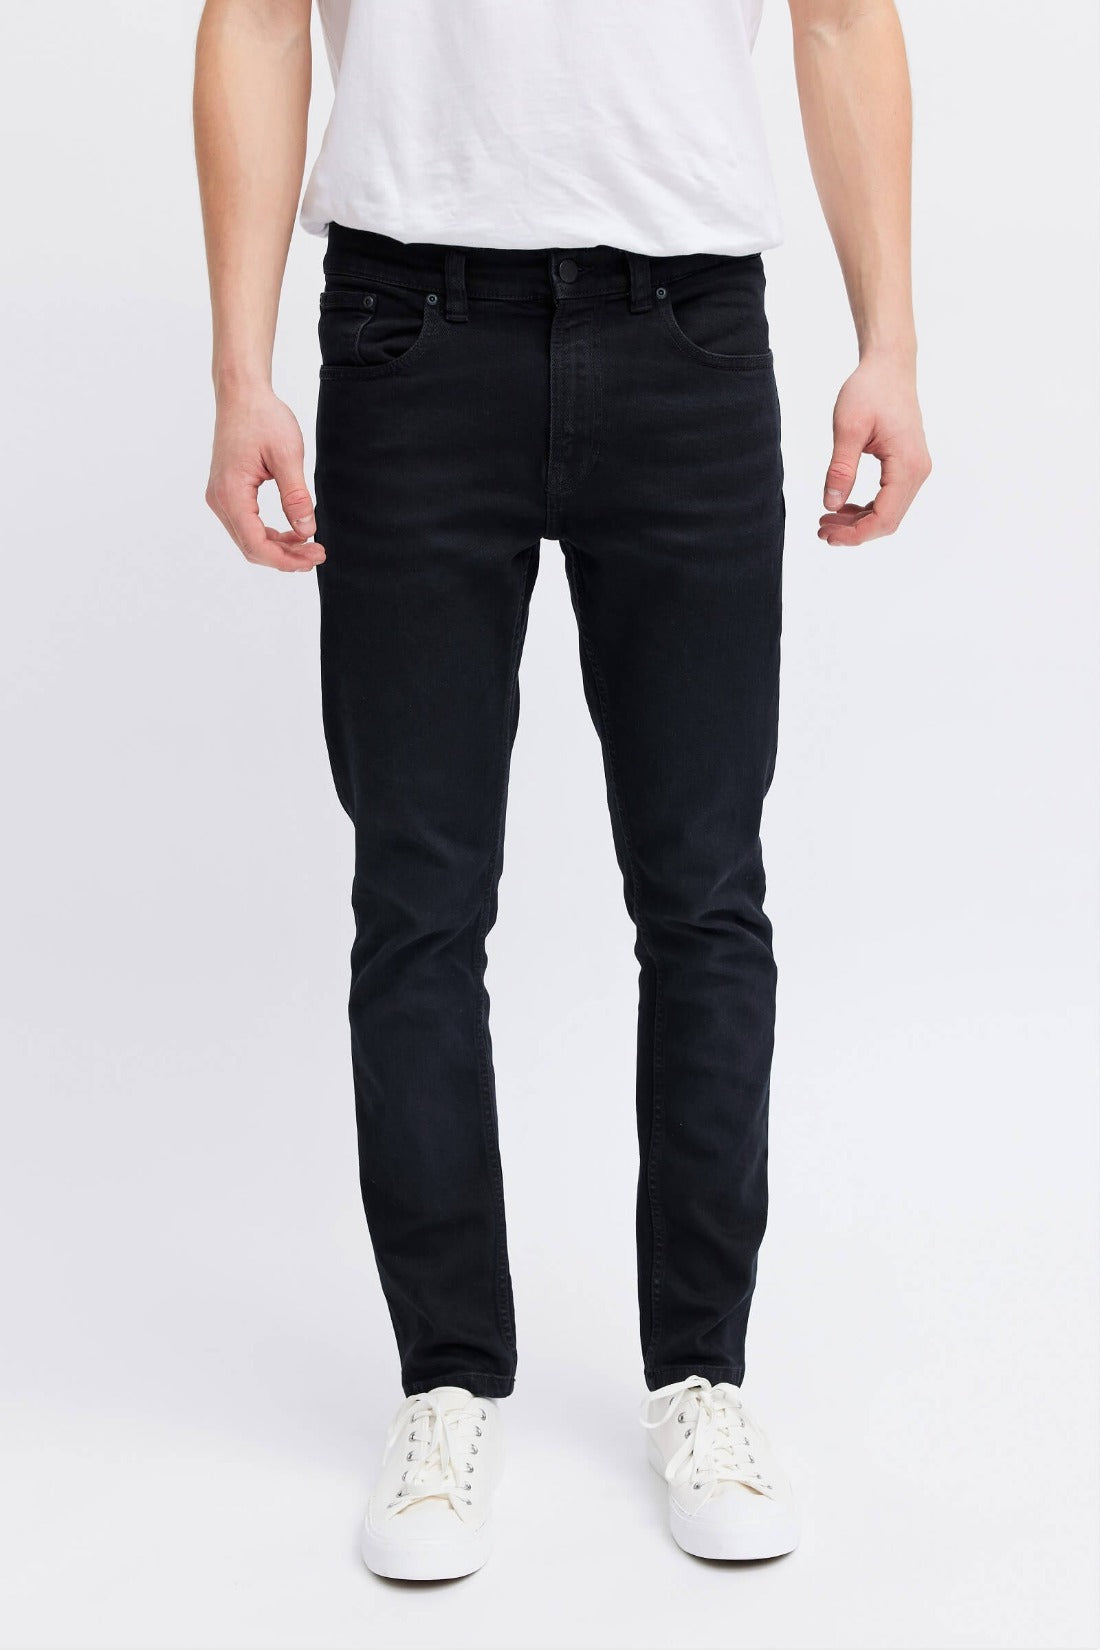 black denim jeans for men